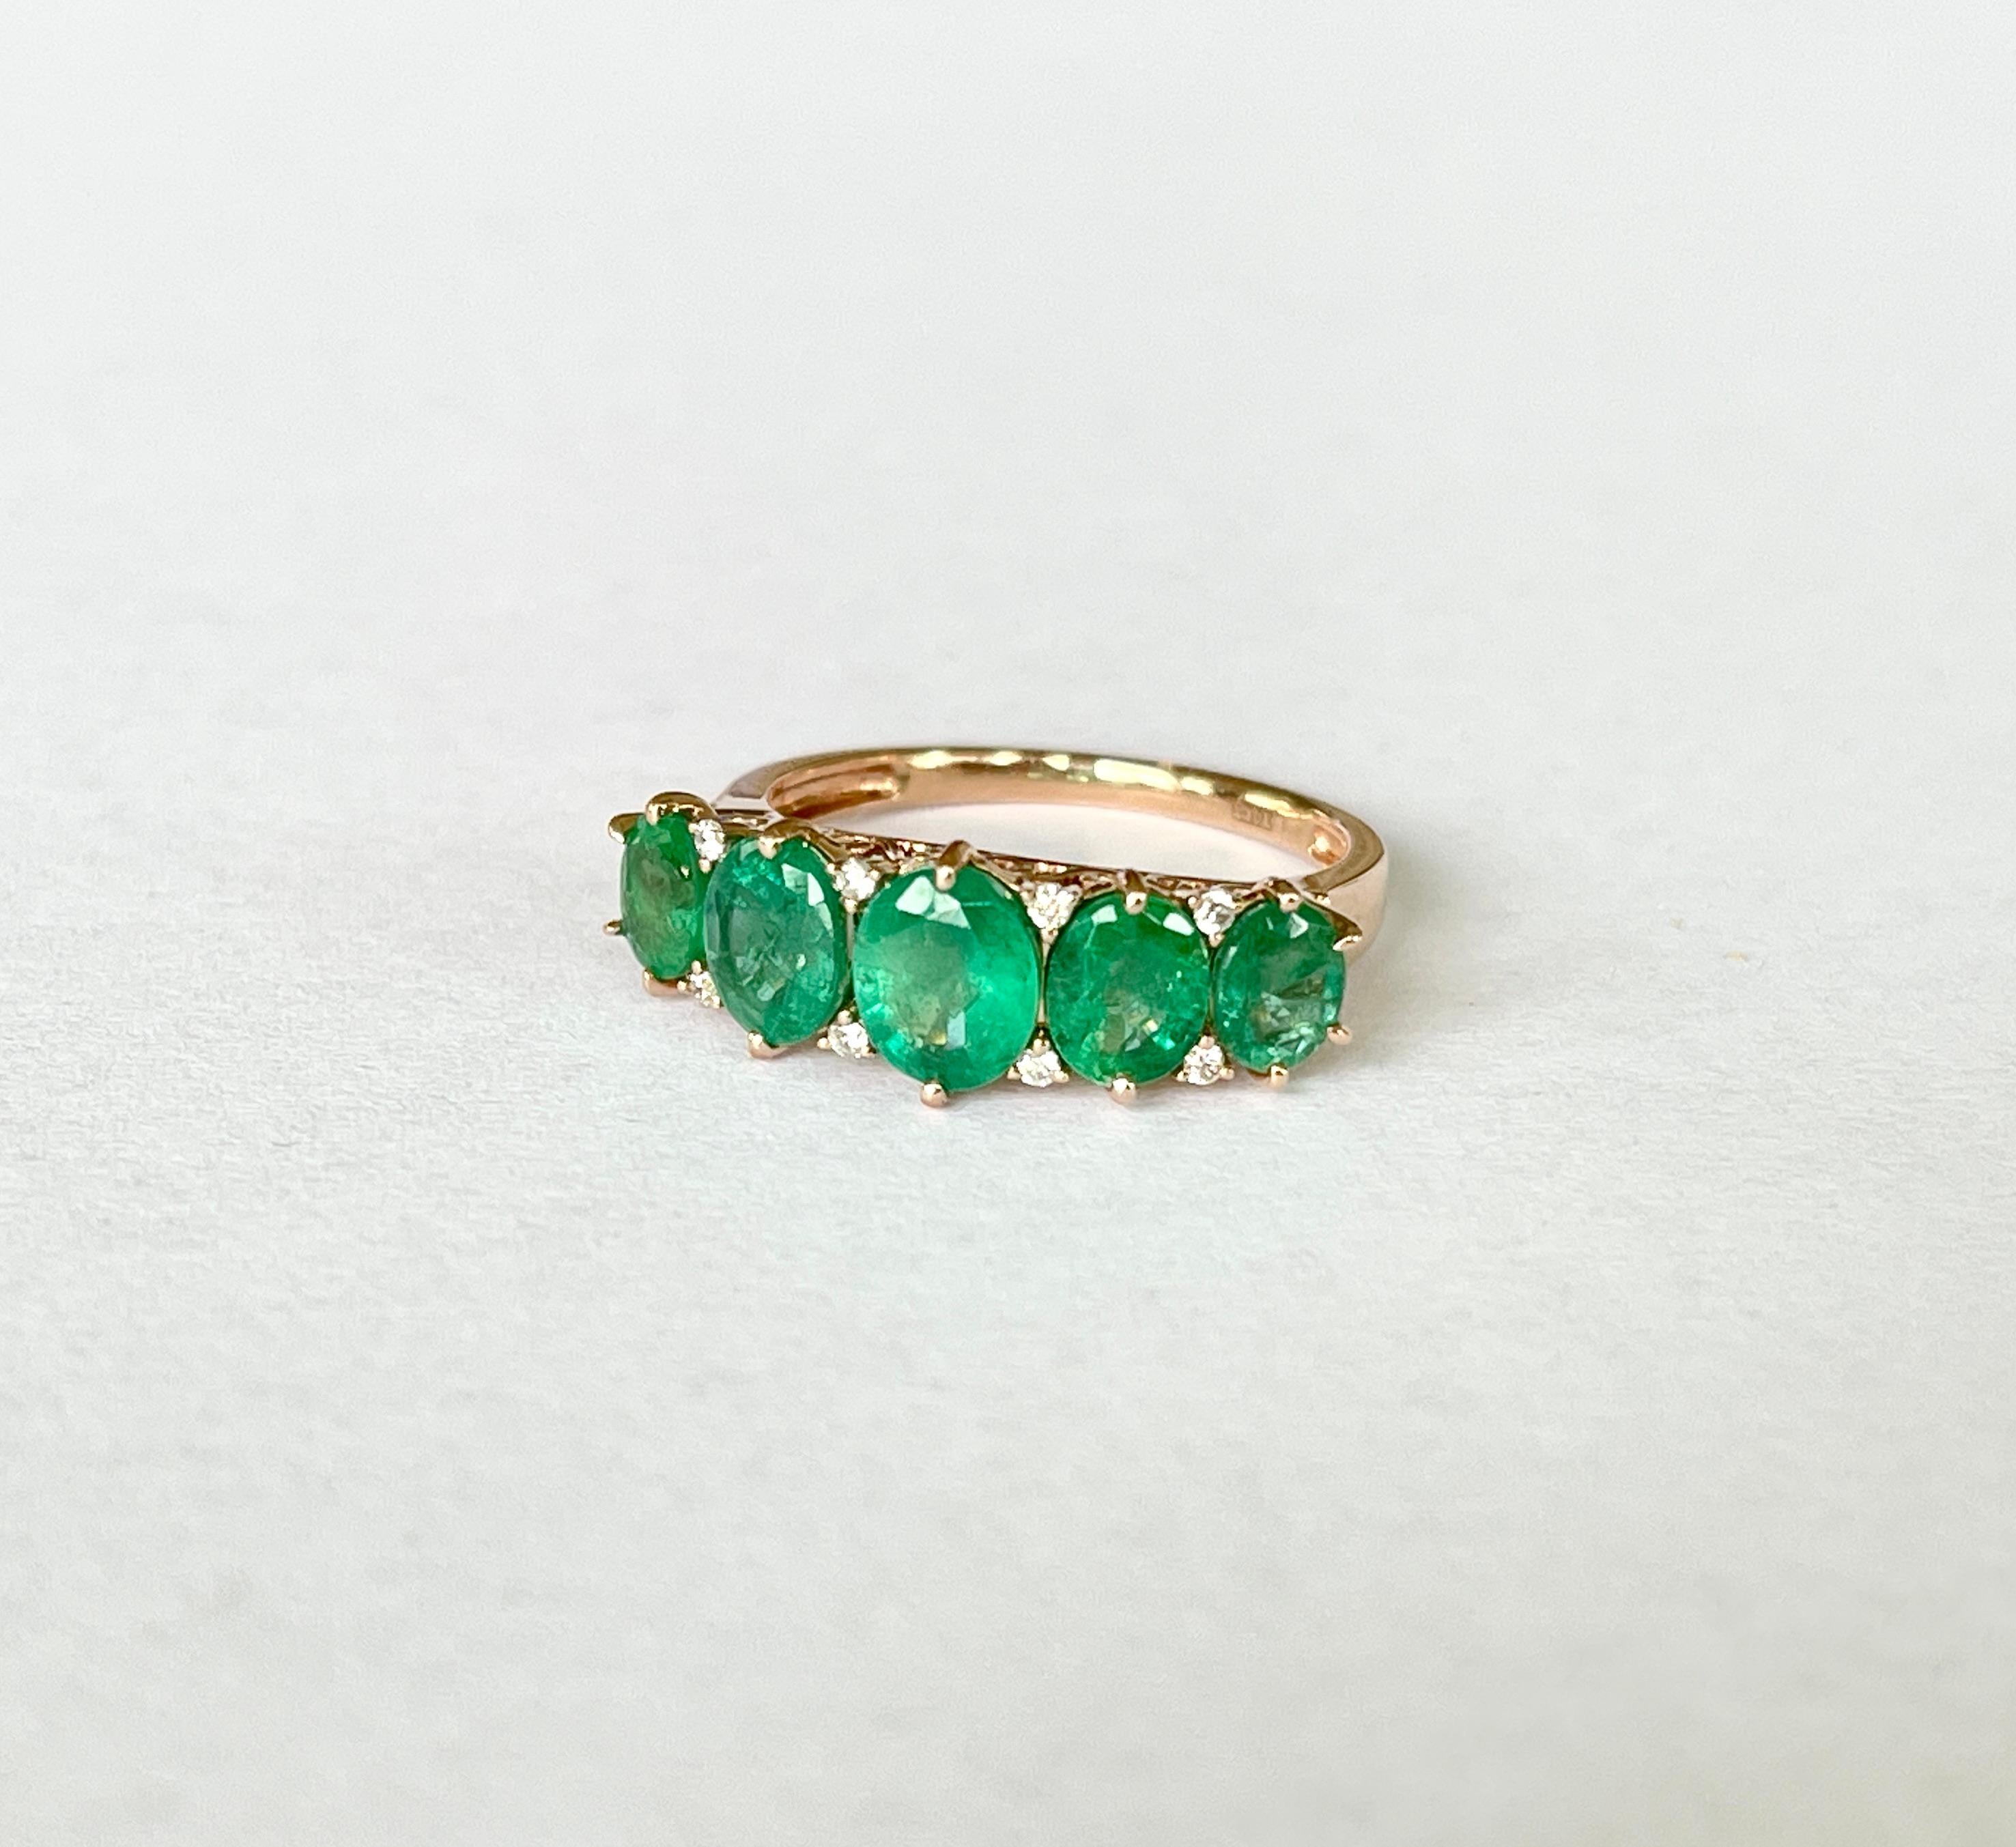 SCHÖNER, KLASSISCHER SMARAGD-BRÜCKENRING

Dieser wunderschöne Ring ist mit 5 hellgrünen natürlichen Smaragden und winzigen Diamanten besetzt. Die Smaragde sind oval geschliffen und in der Größe abgestuft, so dass sie sich über den Finger erstrecken.